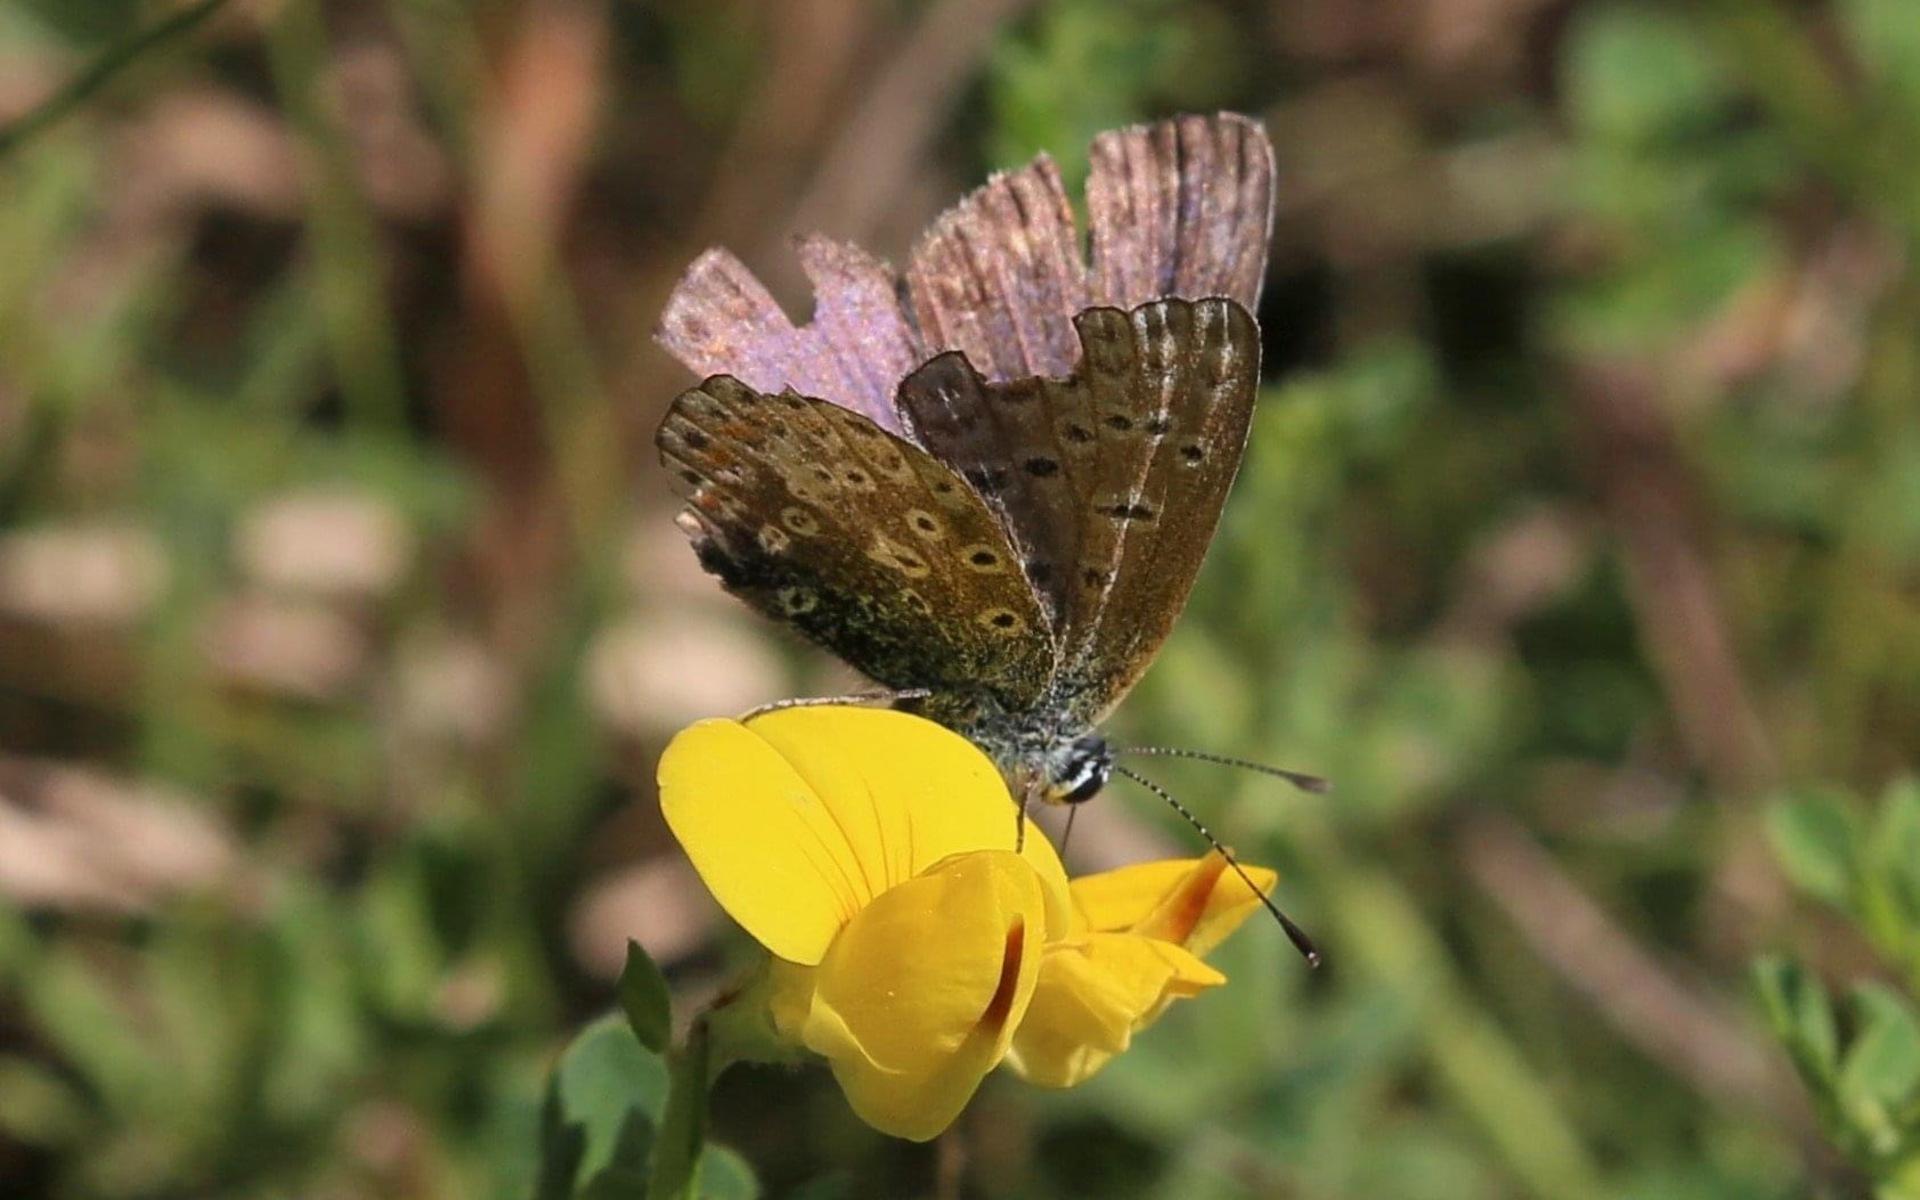 En Puktörneblåvinge i slutet av säsongen då fjärilarna börjar bli lite slitna, bild tagen i Kållered.